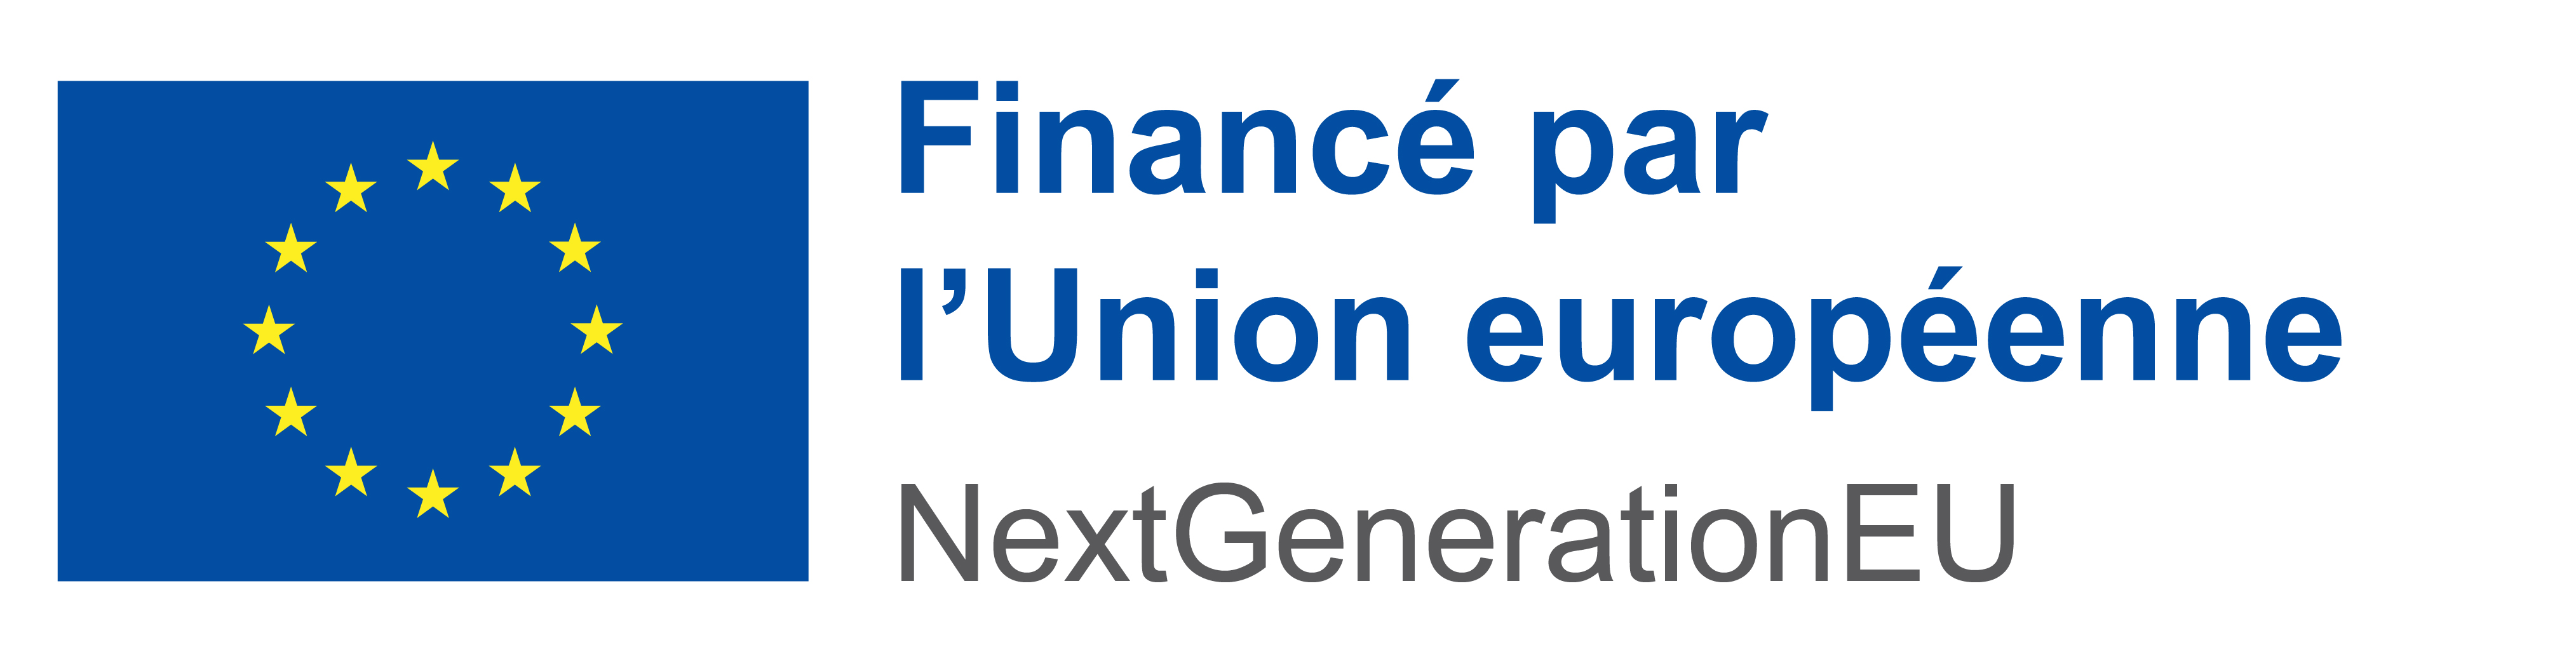 FR Financé par l’Union européenne_POS_POS